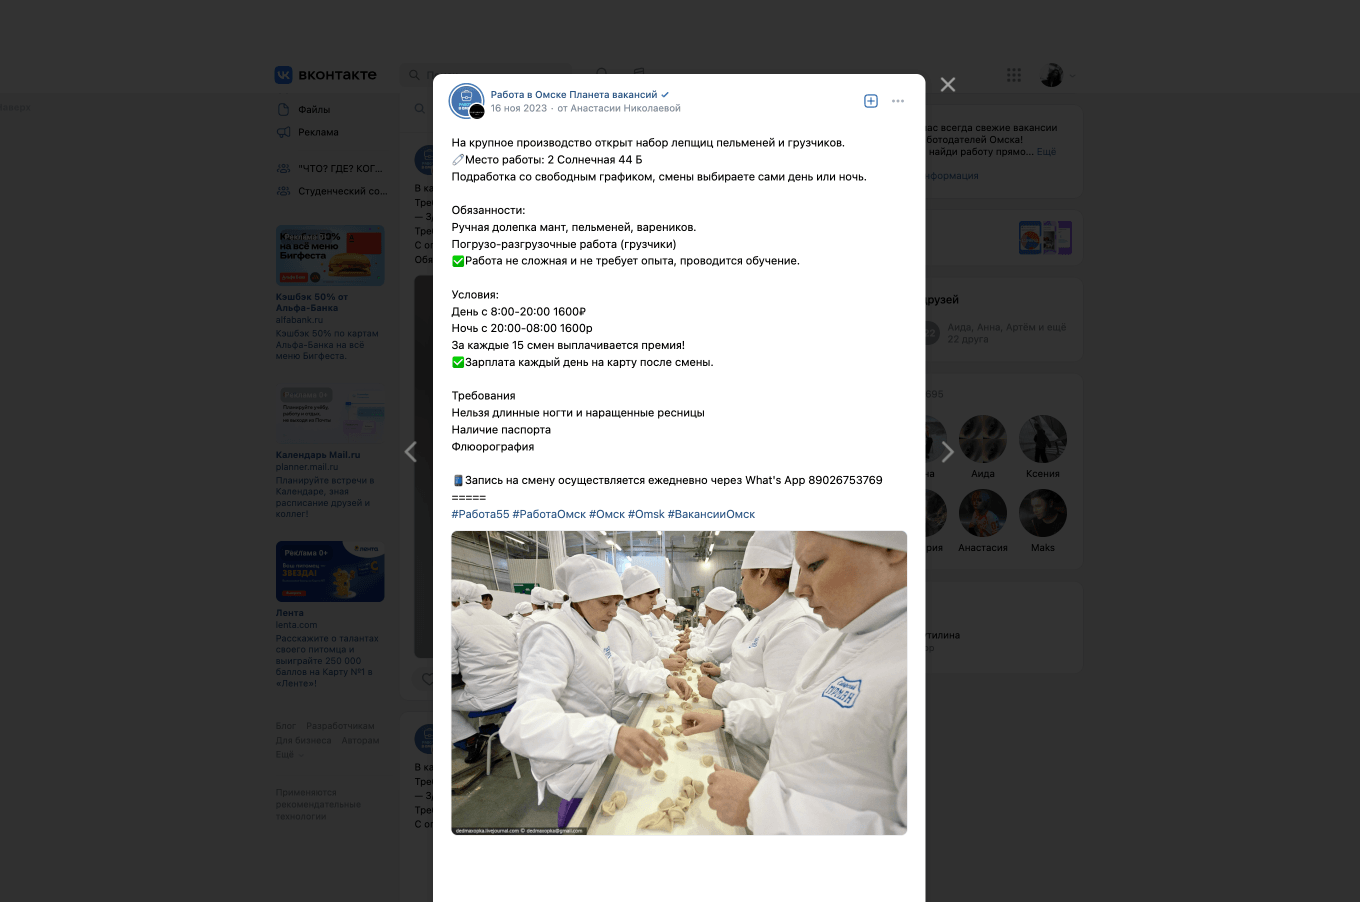 Пример вакансии лепщика пельменей в паблике во ВКонтакте